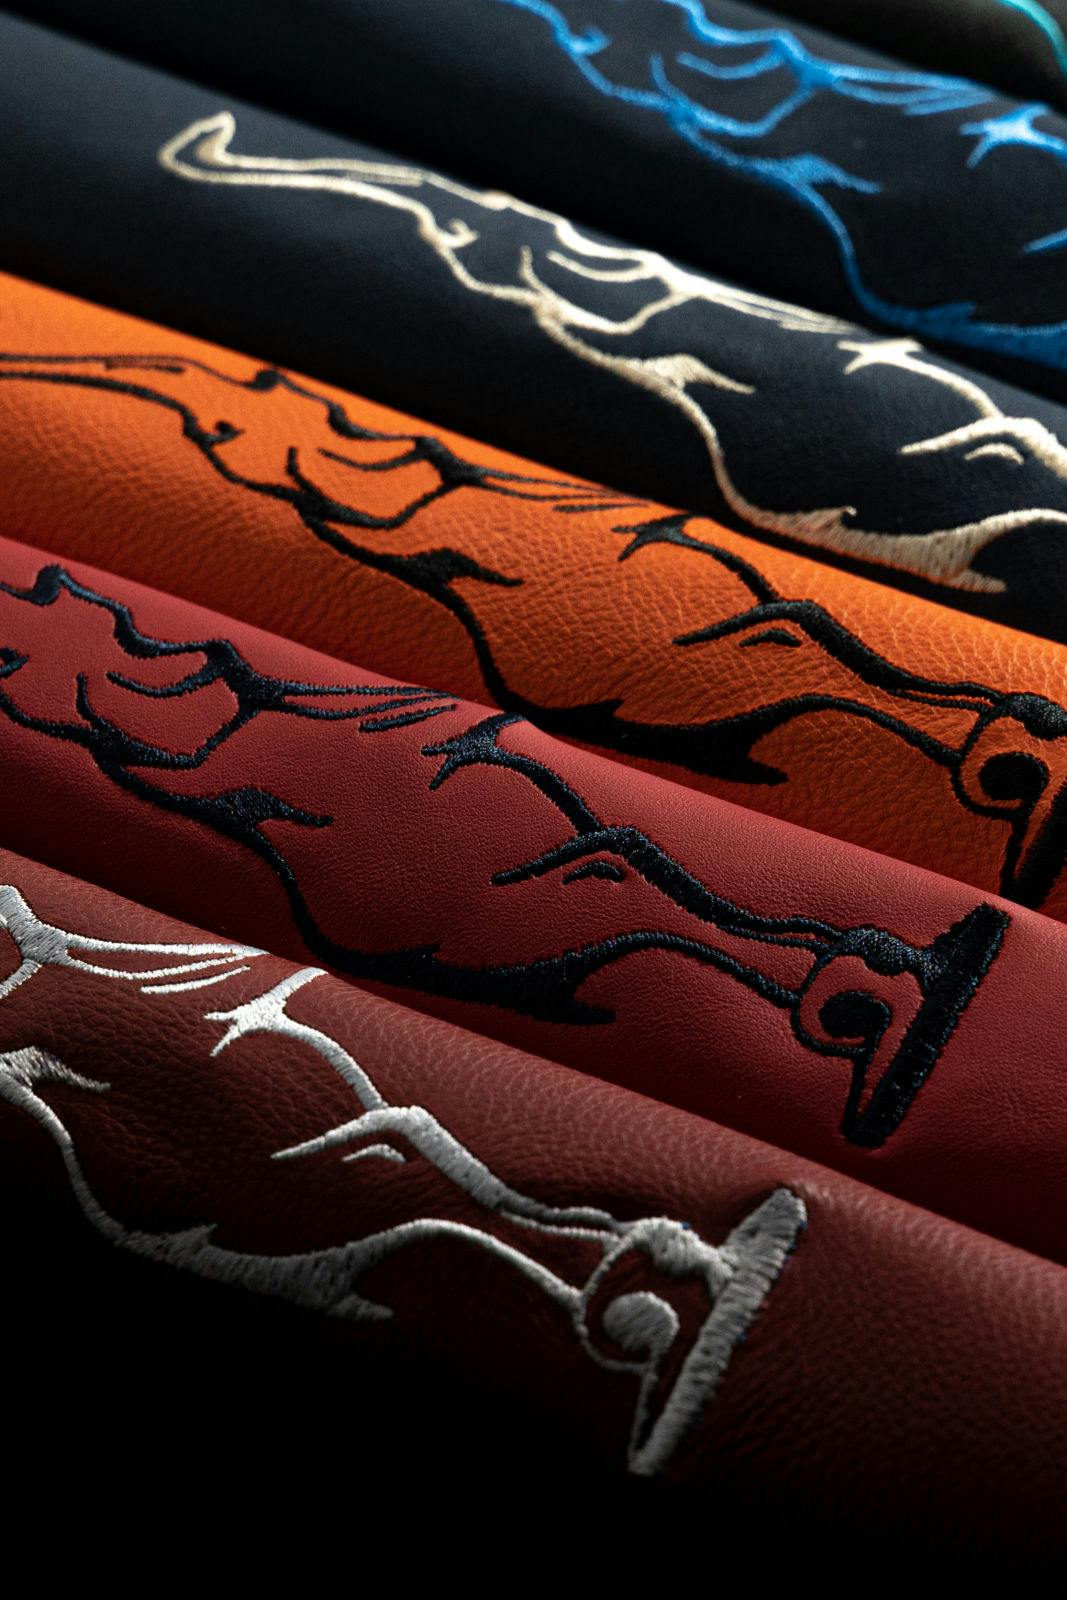 Ein breites Spektrum individueller Farbtöne für Leder und Nähte ermöglicht ein hohes Maß an Personalisierung.